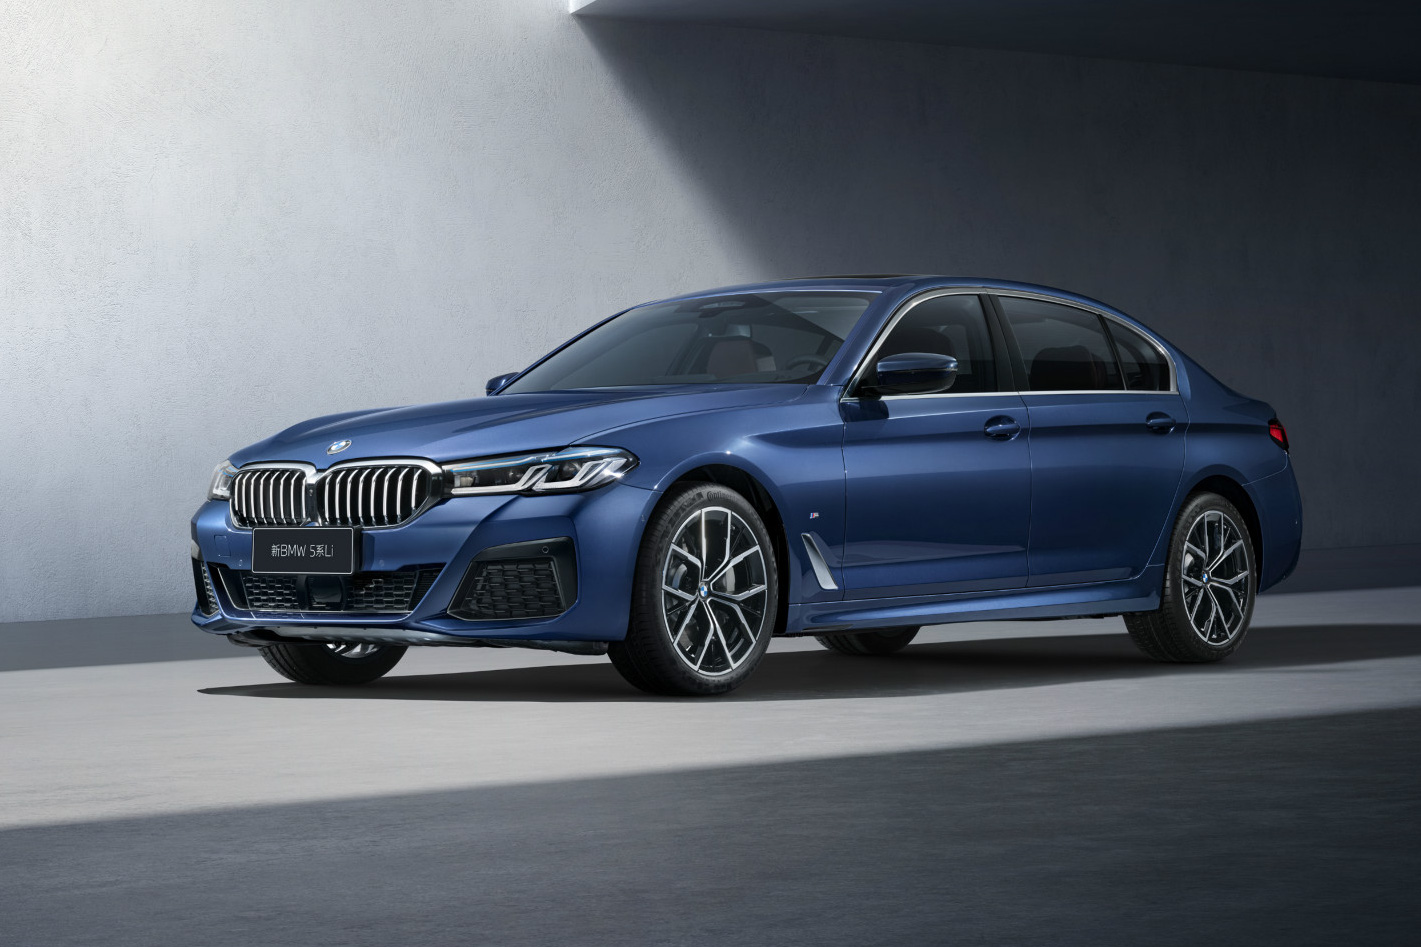 BMW 5-Series đời mới lần đầu lộ nội thất: Có điểm 'chạy theo' E-Class 2021